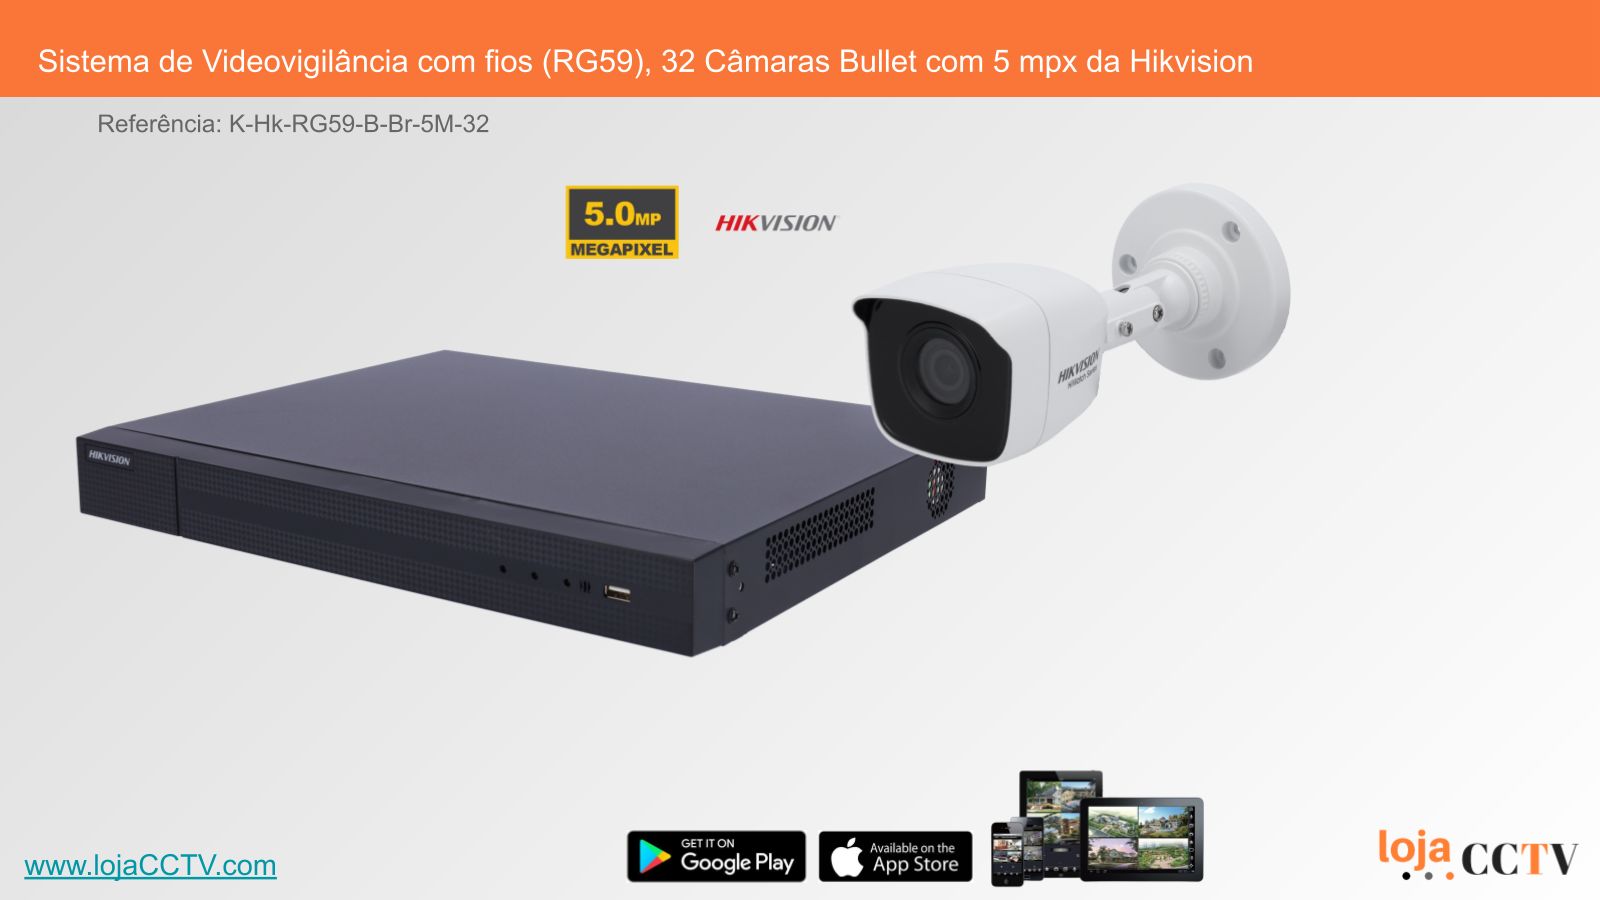 Videovigilância com fios (RG59) 32 Câmaras Tubular 5 mpx, Hikvision